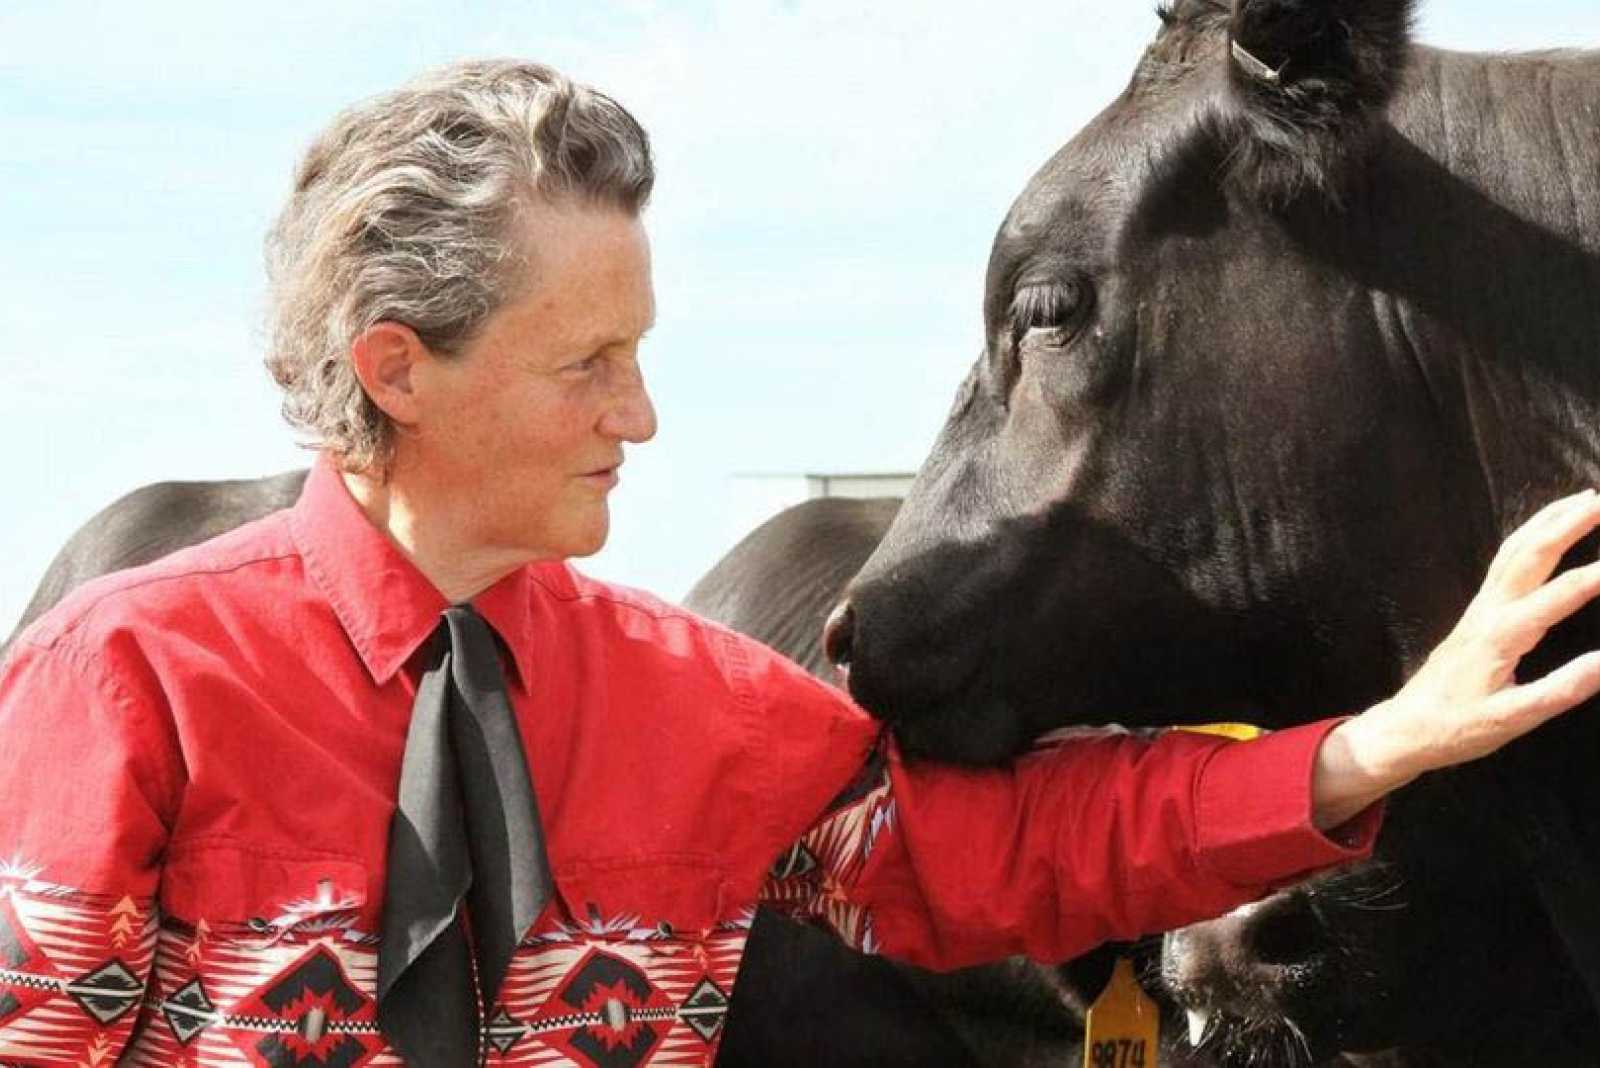 Temple Grandin: “si queremos sistemas sustentables tenemos que fusionar agricultura y ganadería”